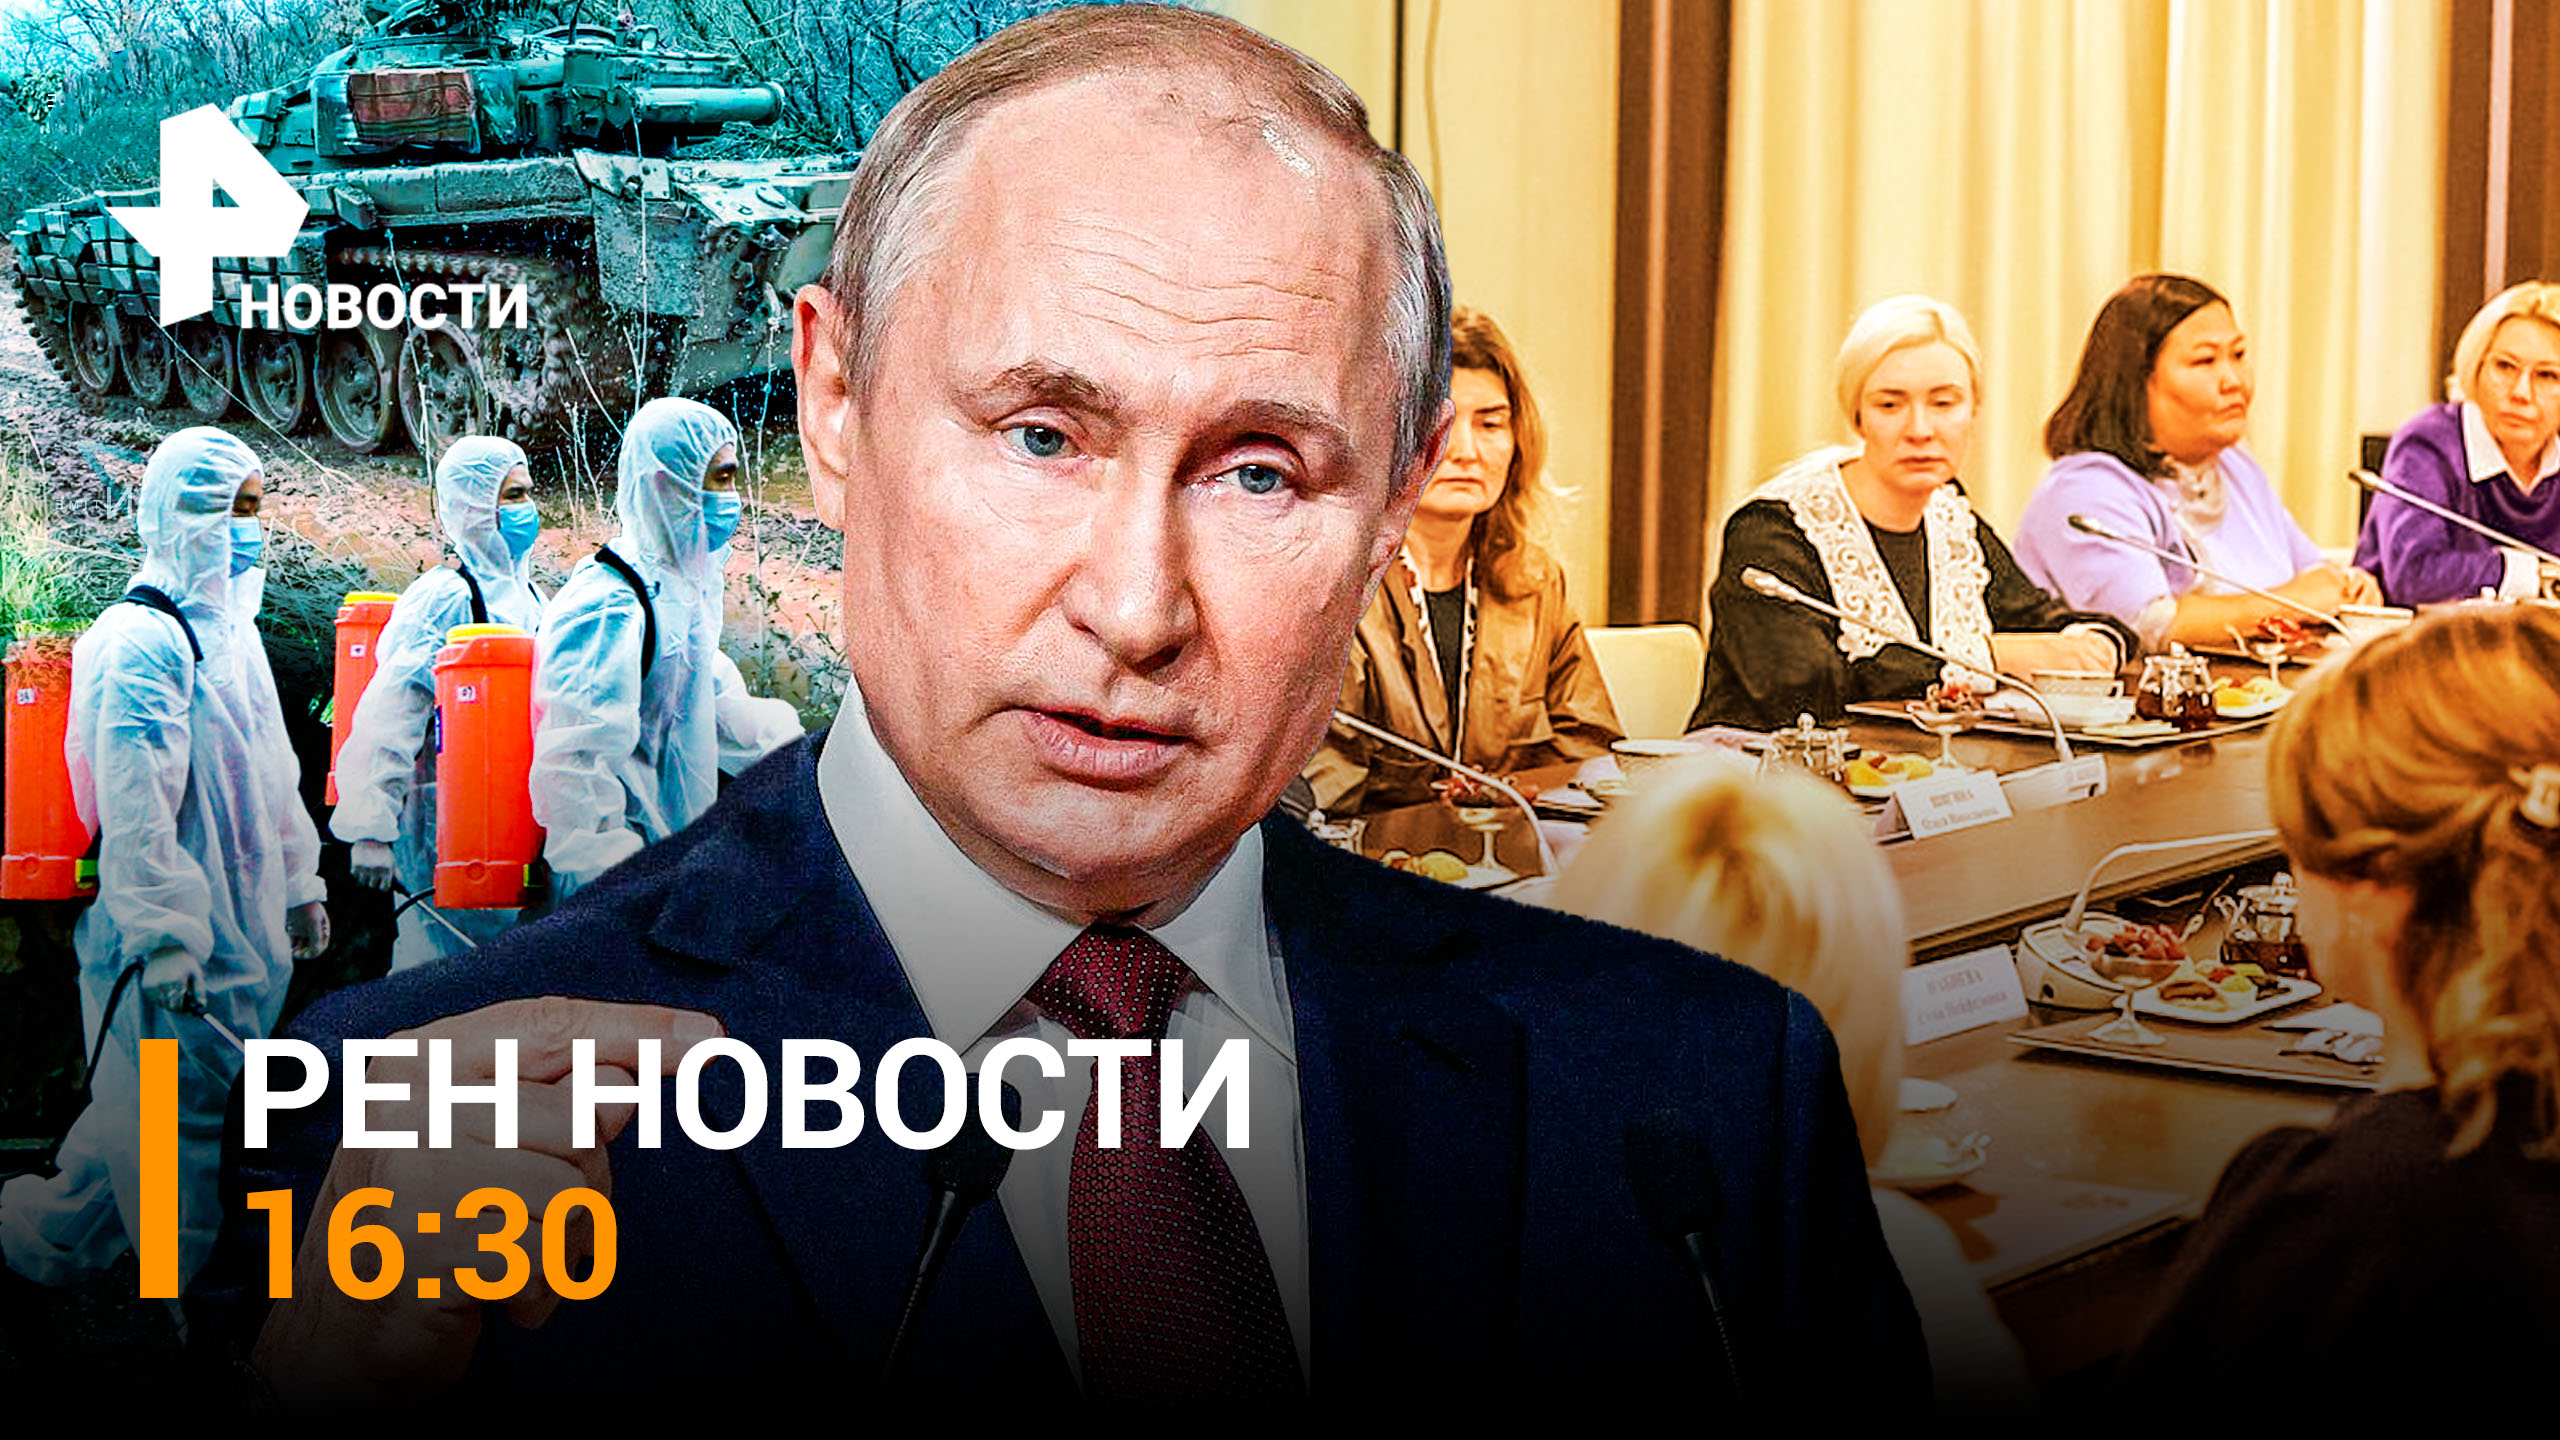 РЕН ТВ НОВОСТИ 16:30 от 25.11: Путин встретился с матерями мобилизованных. Танки могут: налет на ВСУ